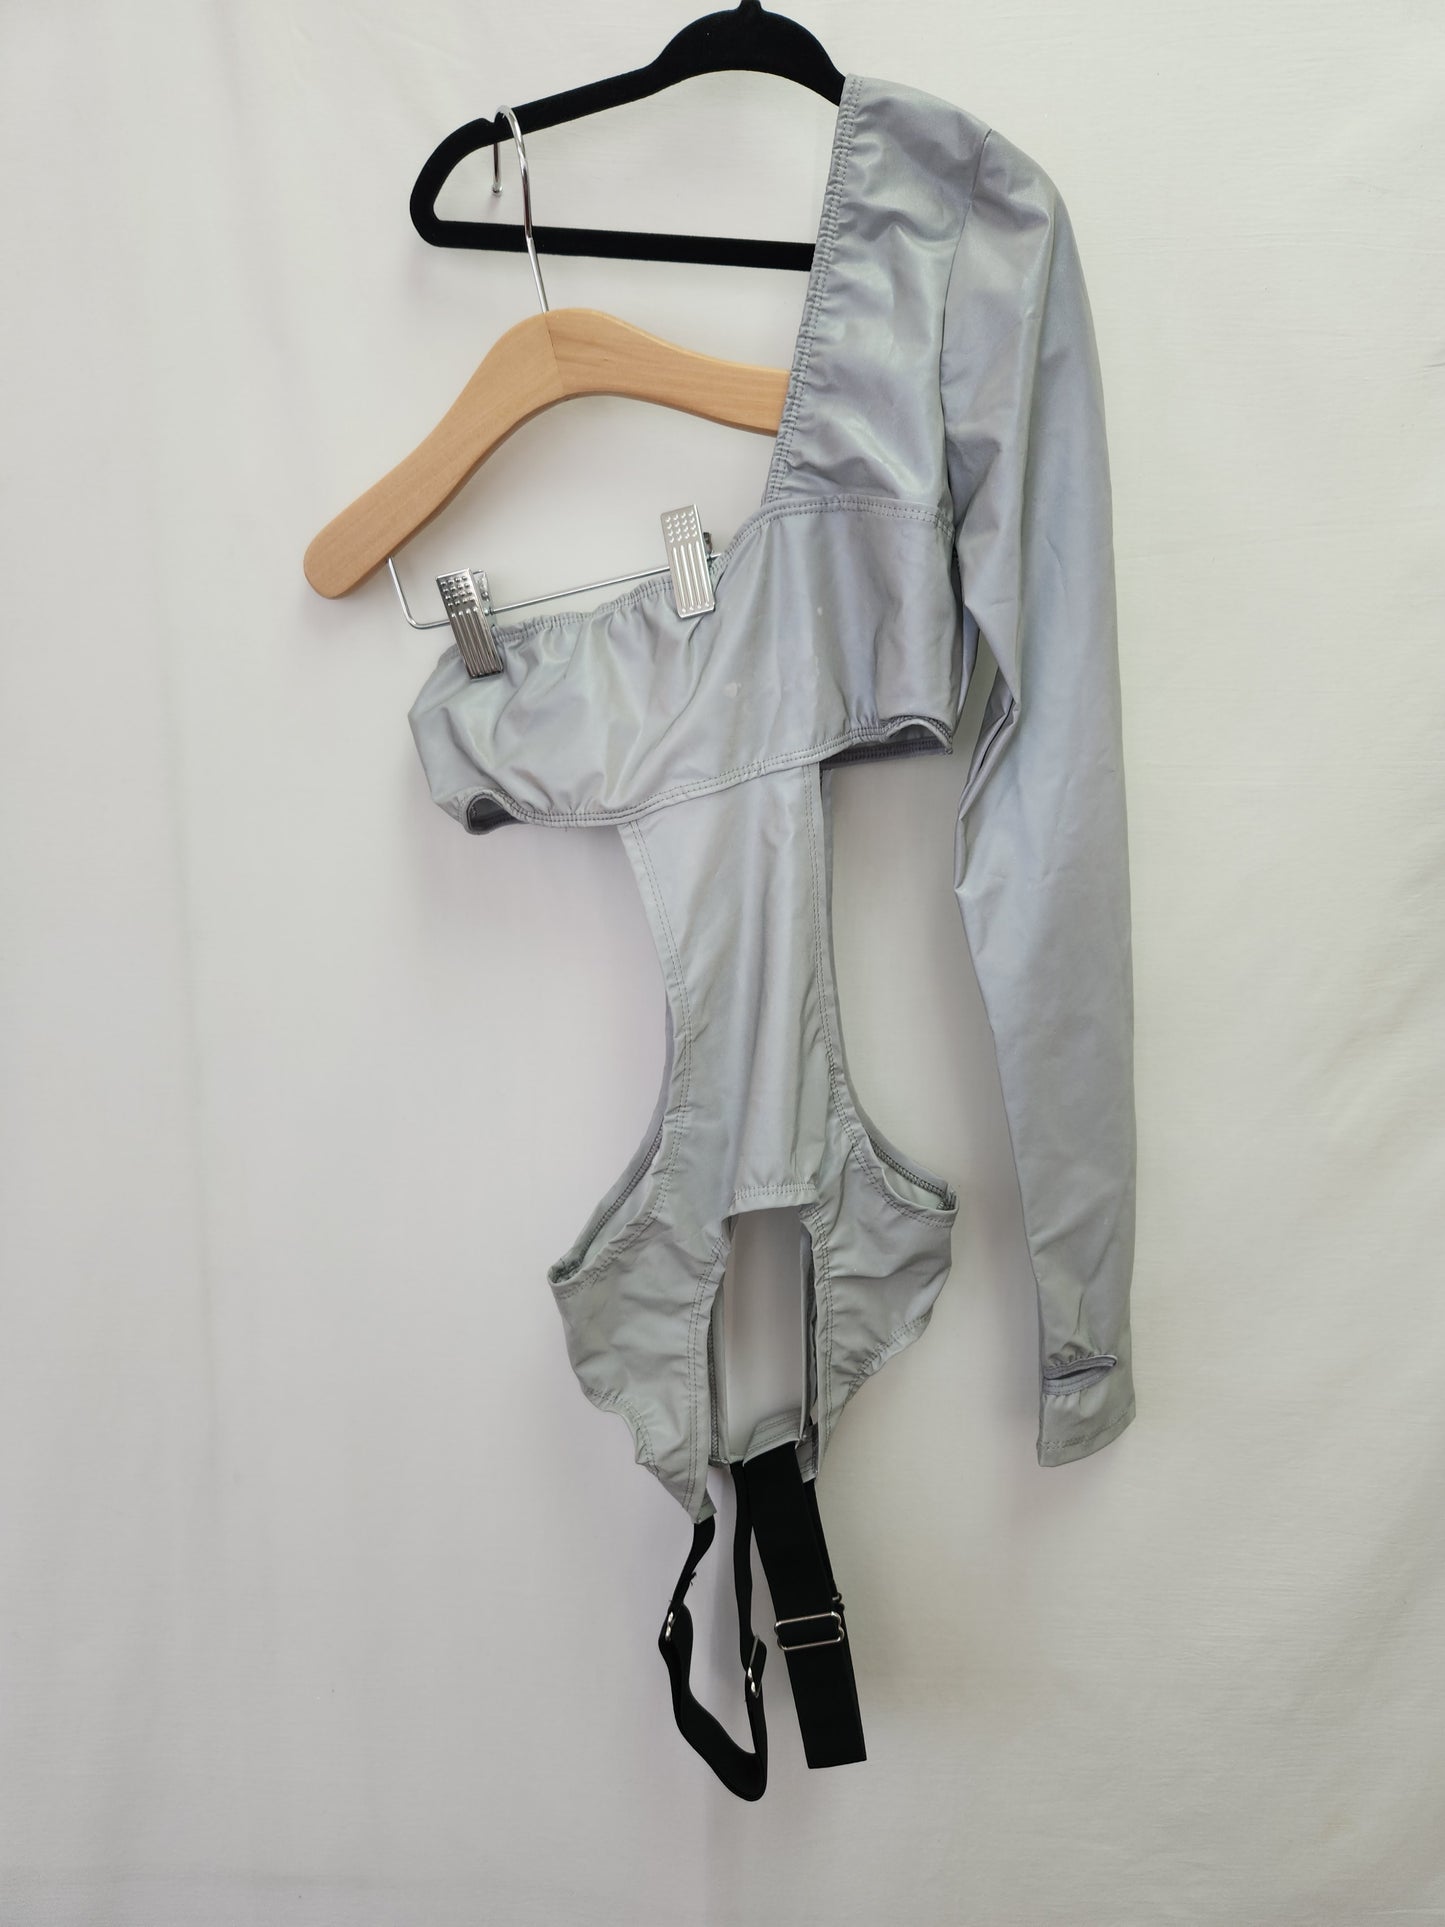 NWT - DOLLS KILL Club EXX Digital Inferno Reflective Bodysuit - Size: XS